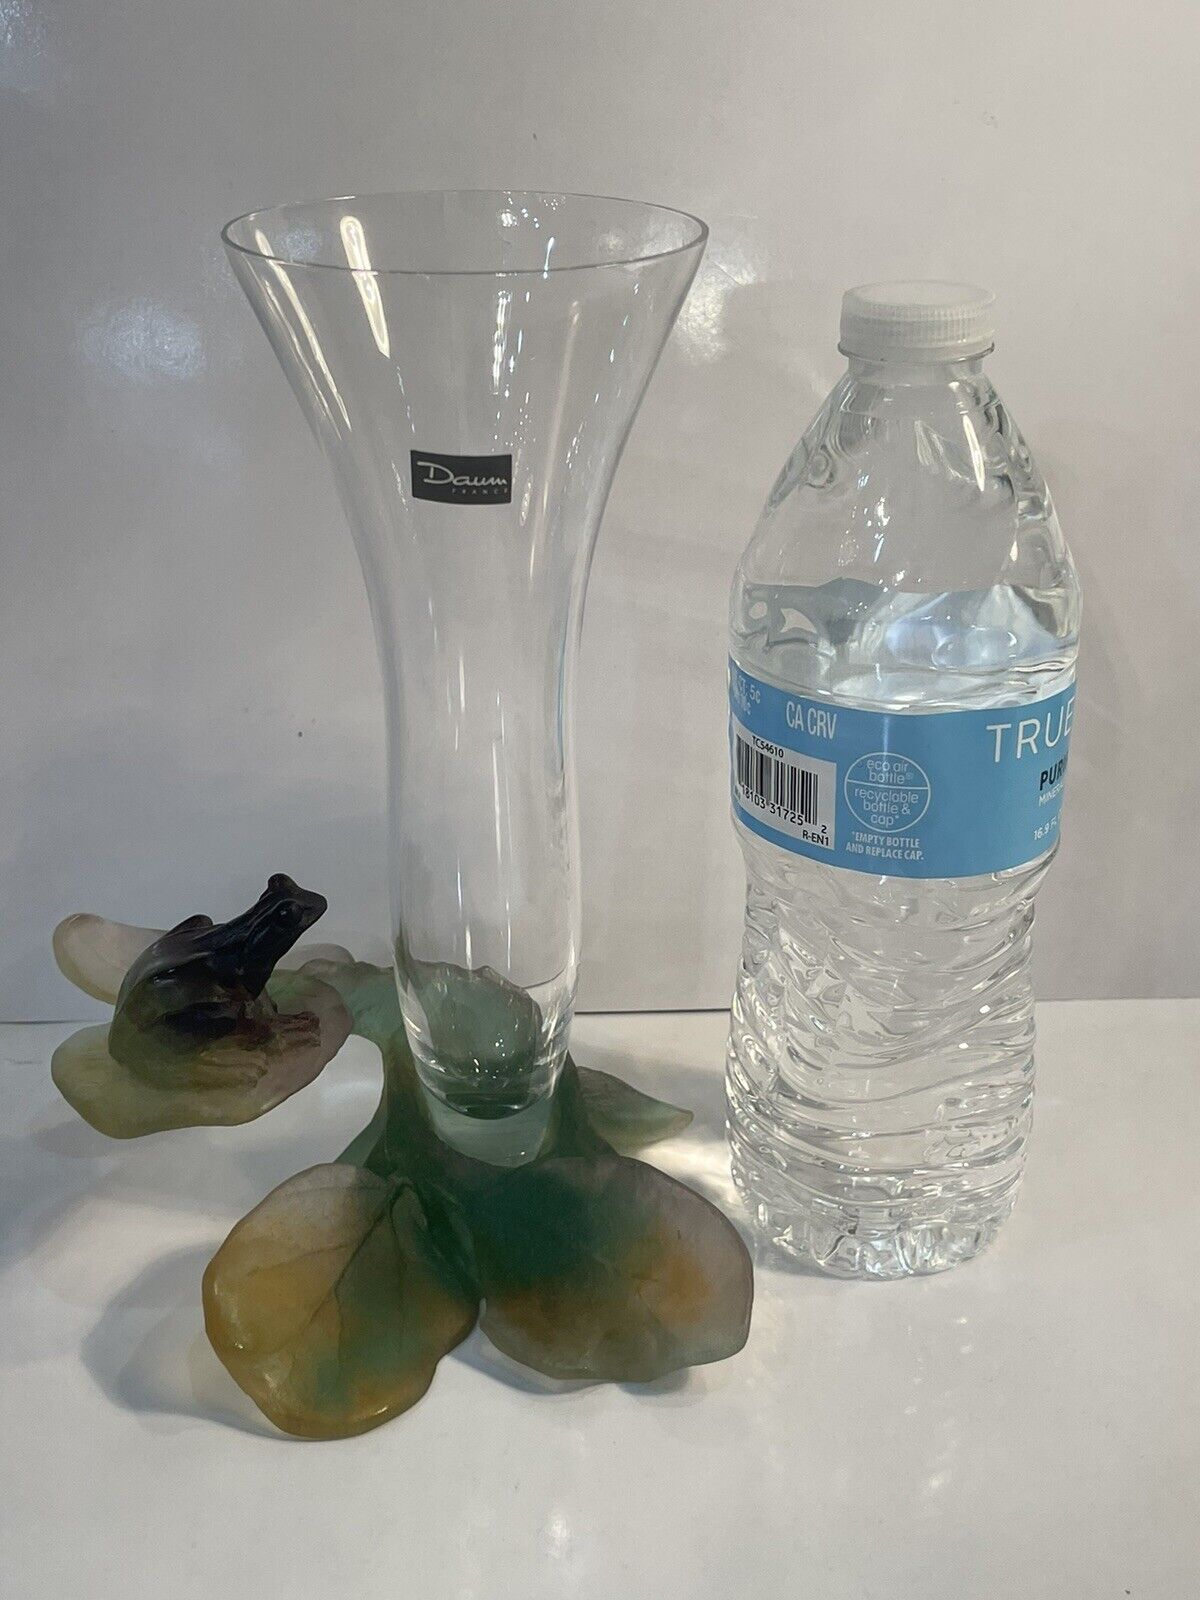 Rare Daum Pate De Verre Flower Bud Vase With Frog 8.25” MINT Condition w/Label